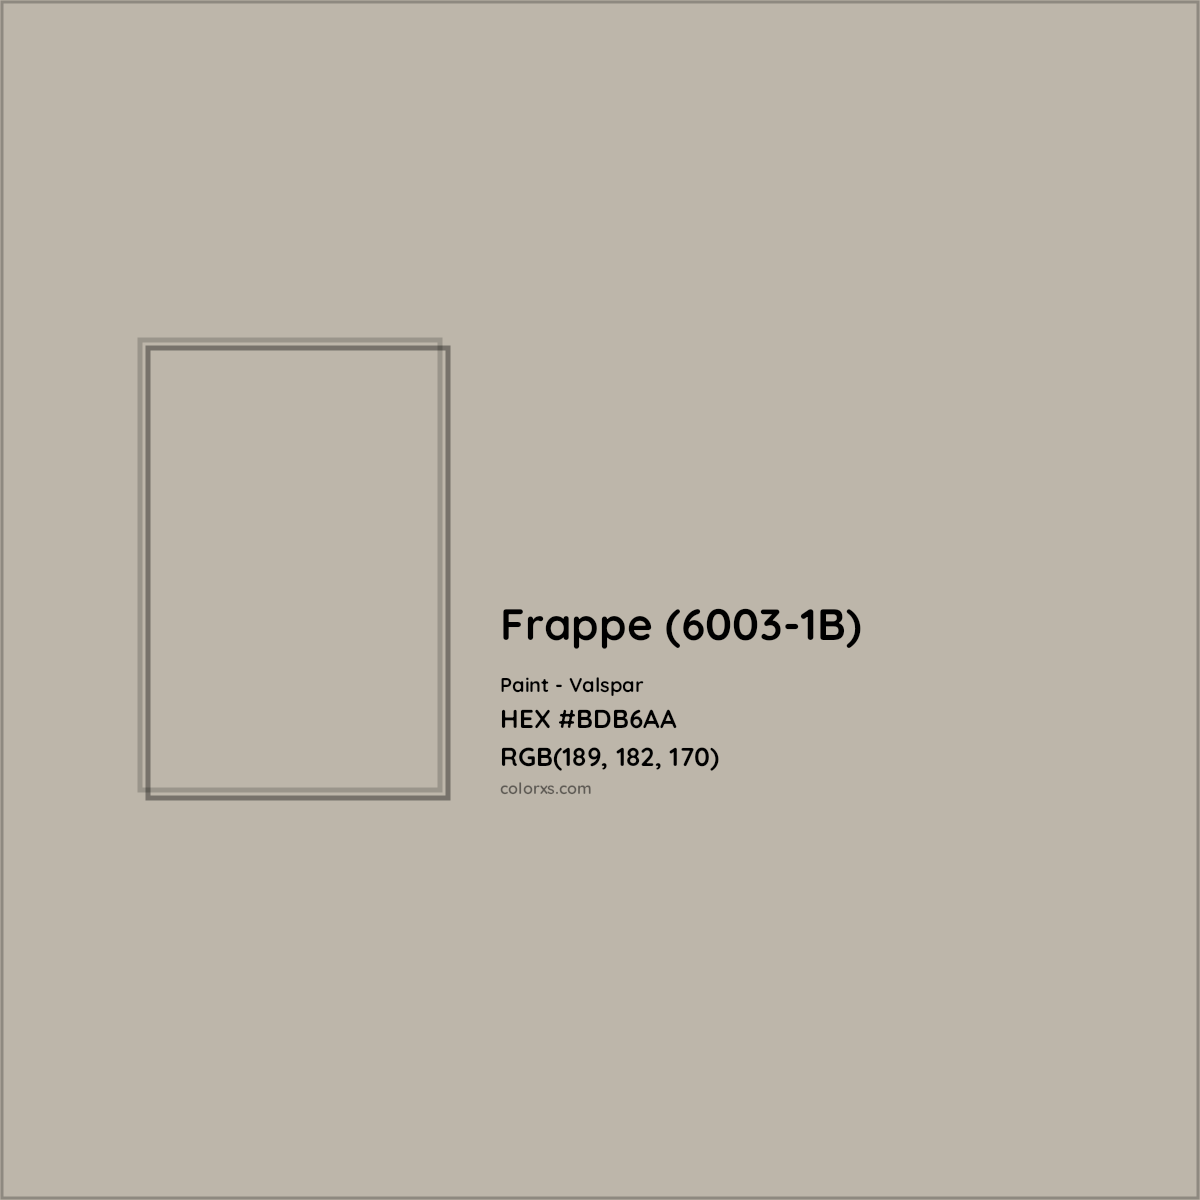 HEX #BDB6AA Frappe (6003-1B) Paint Valspar - Color Code